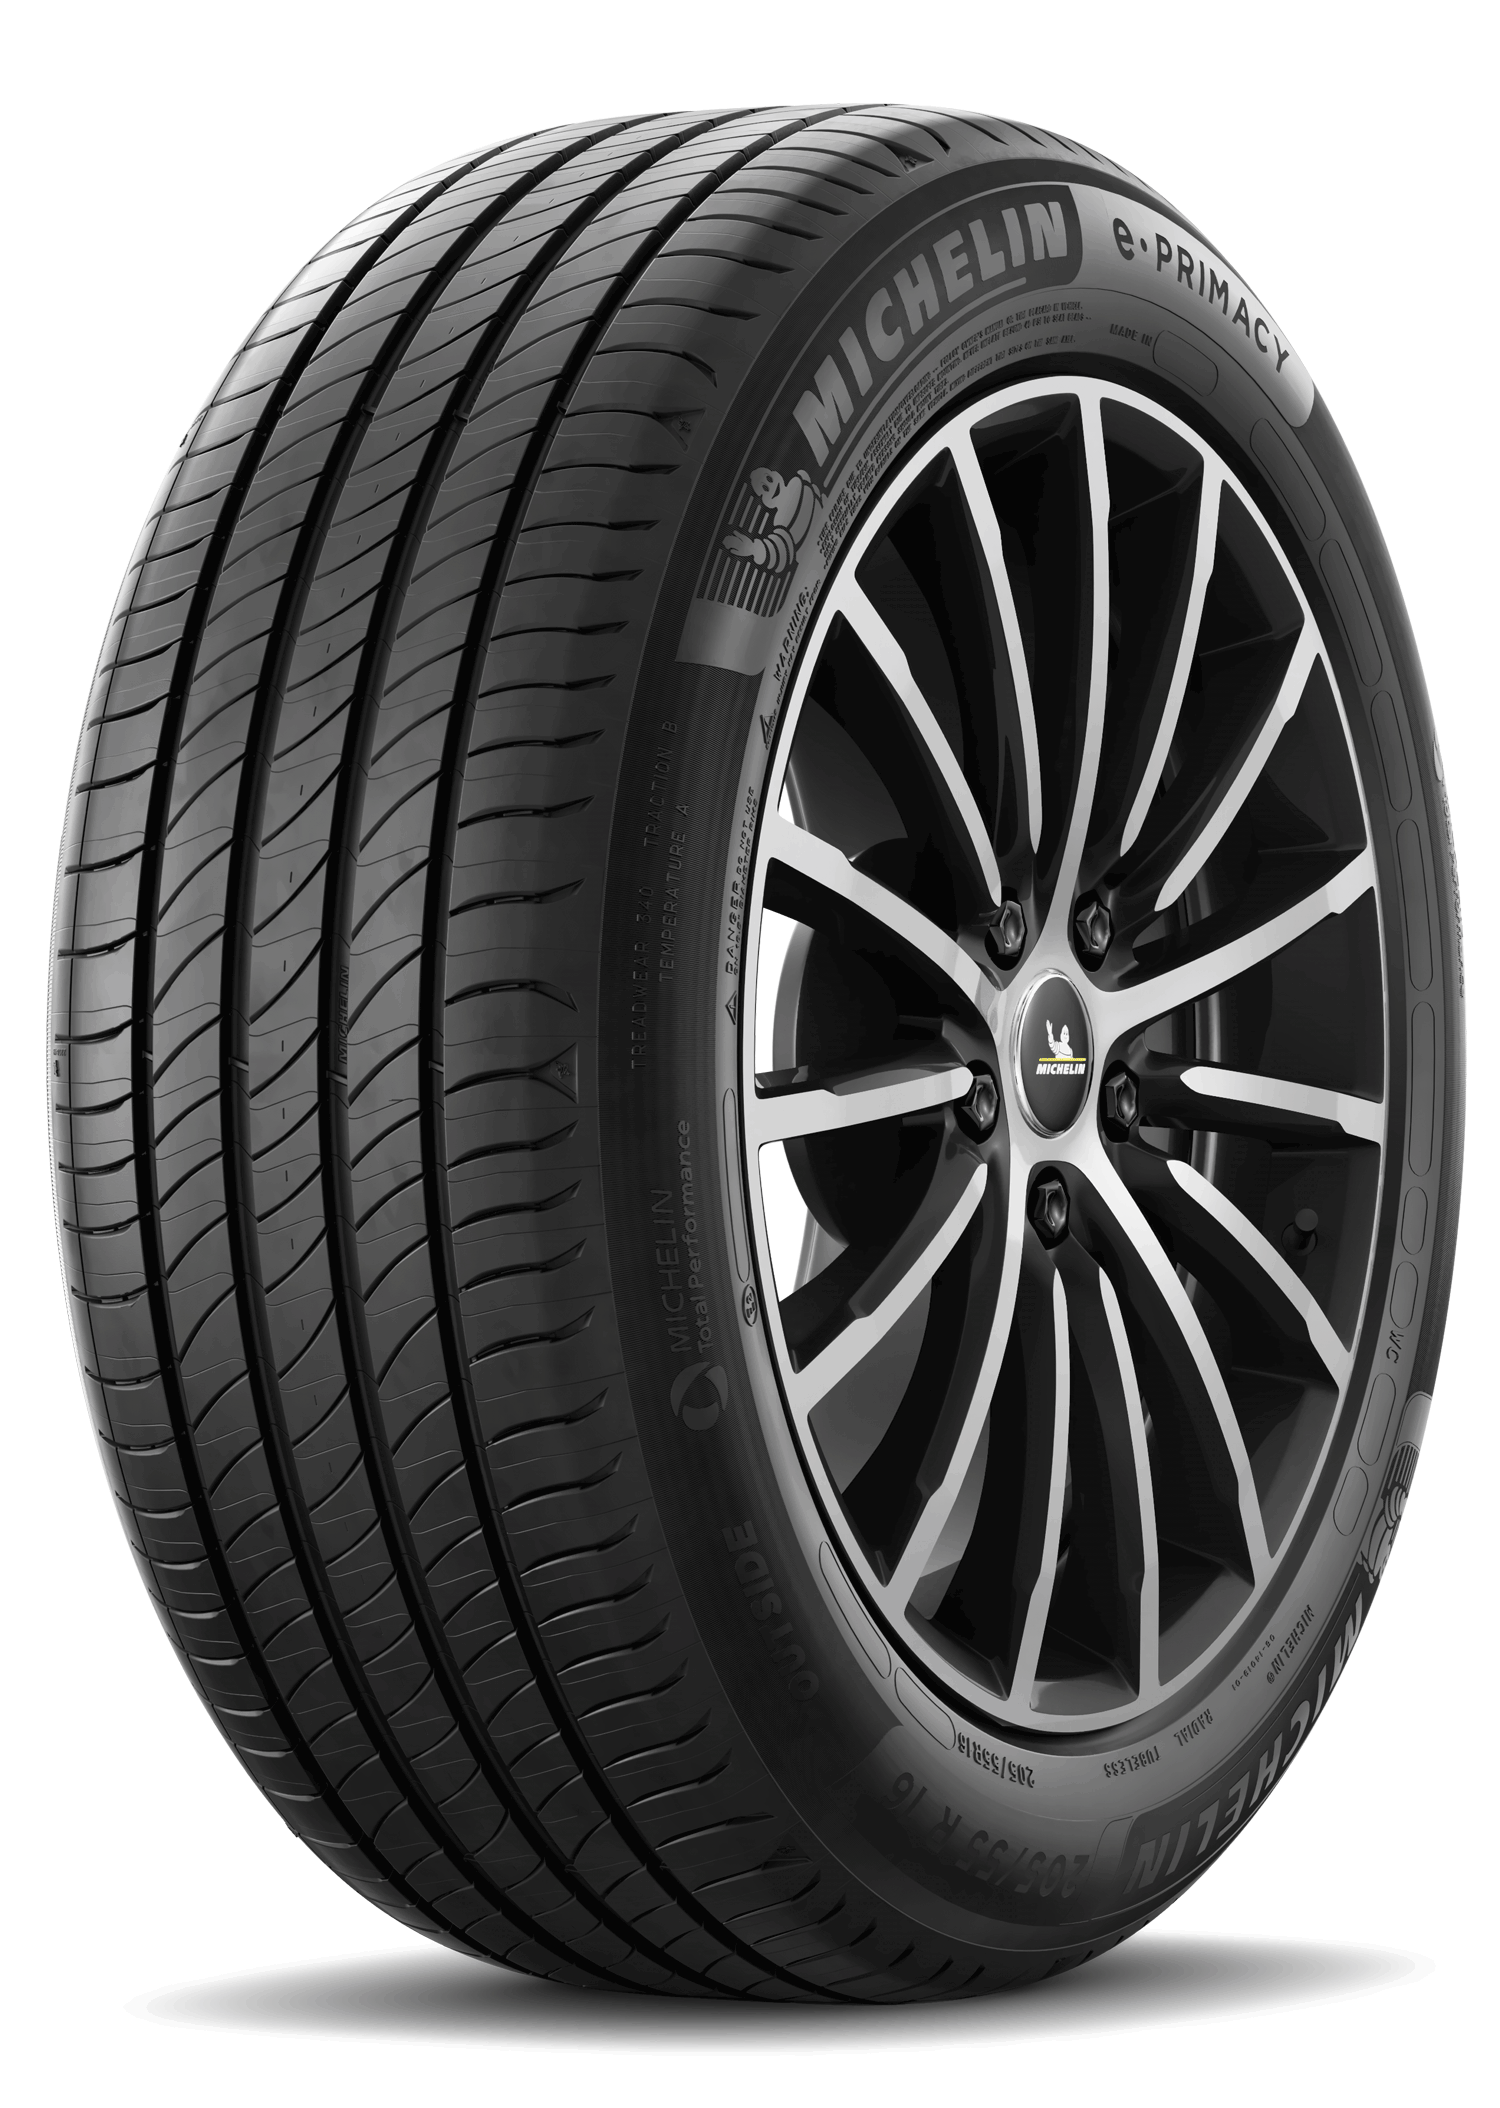 Gomme Nuove Michelin 185/60 R15 88H E PRIMACY pneumatici nuovi Estivo